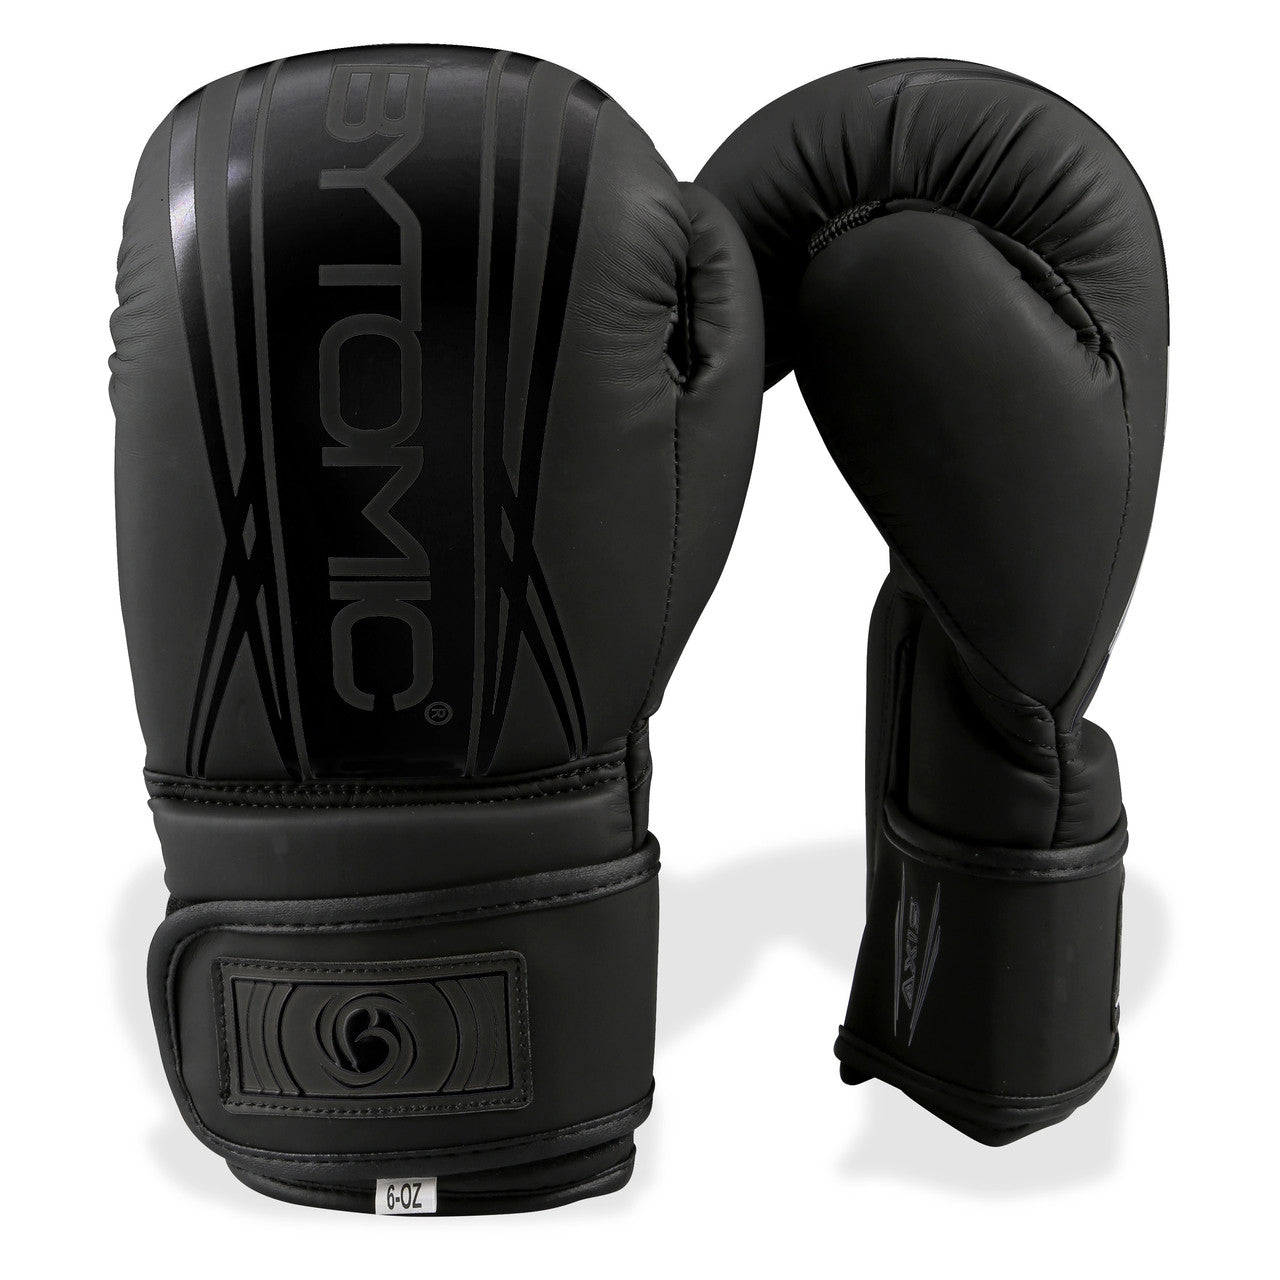 Gants de boxe enfants Bytomic Axis V2 Noir/Noir  Sac d'entraînement  aquatique Europe – Aqua Training Bag Europe